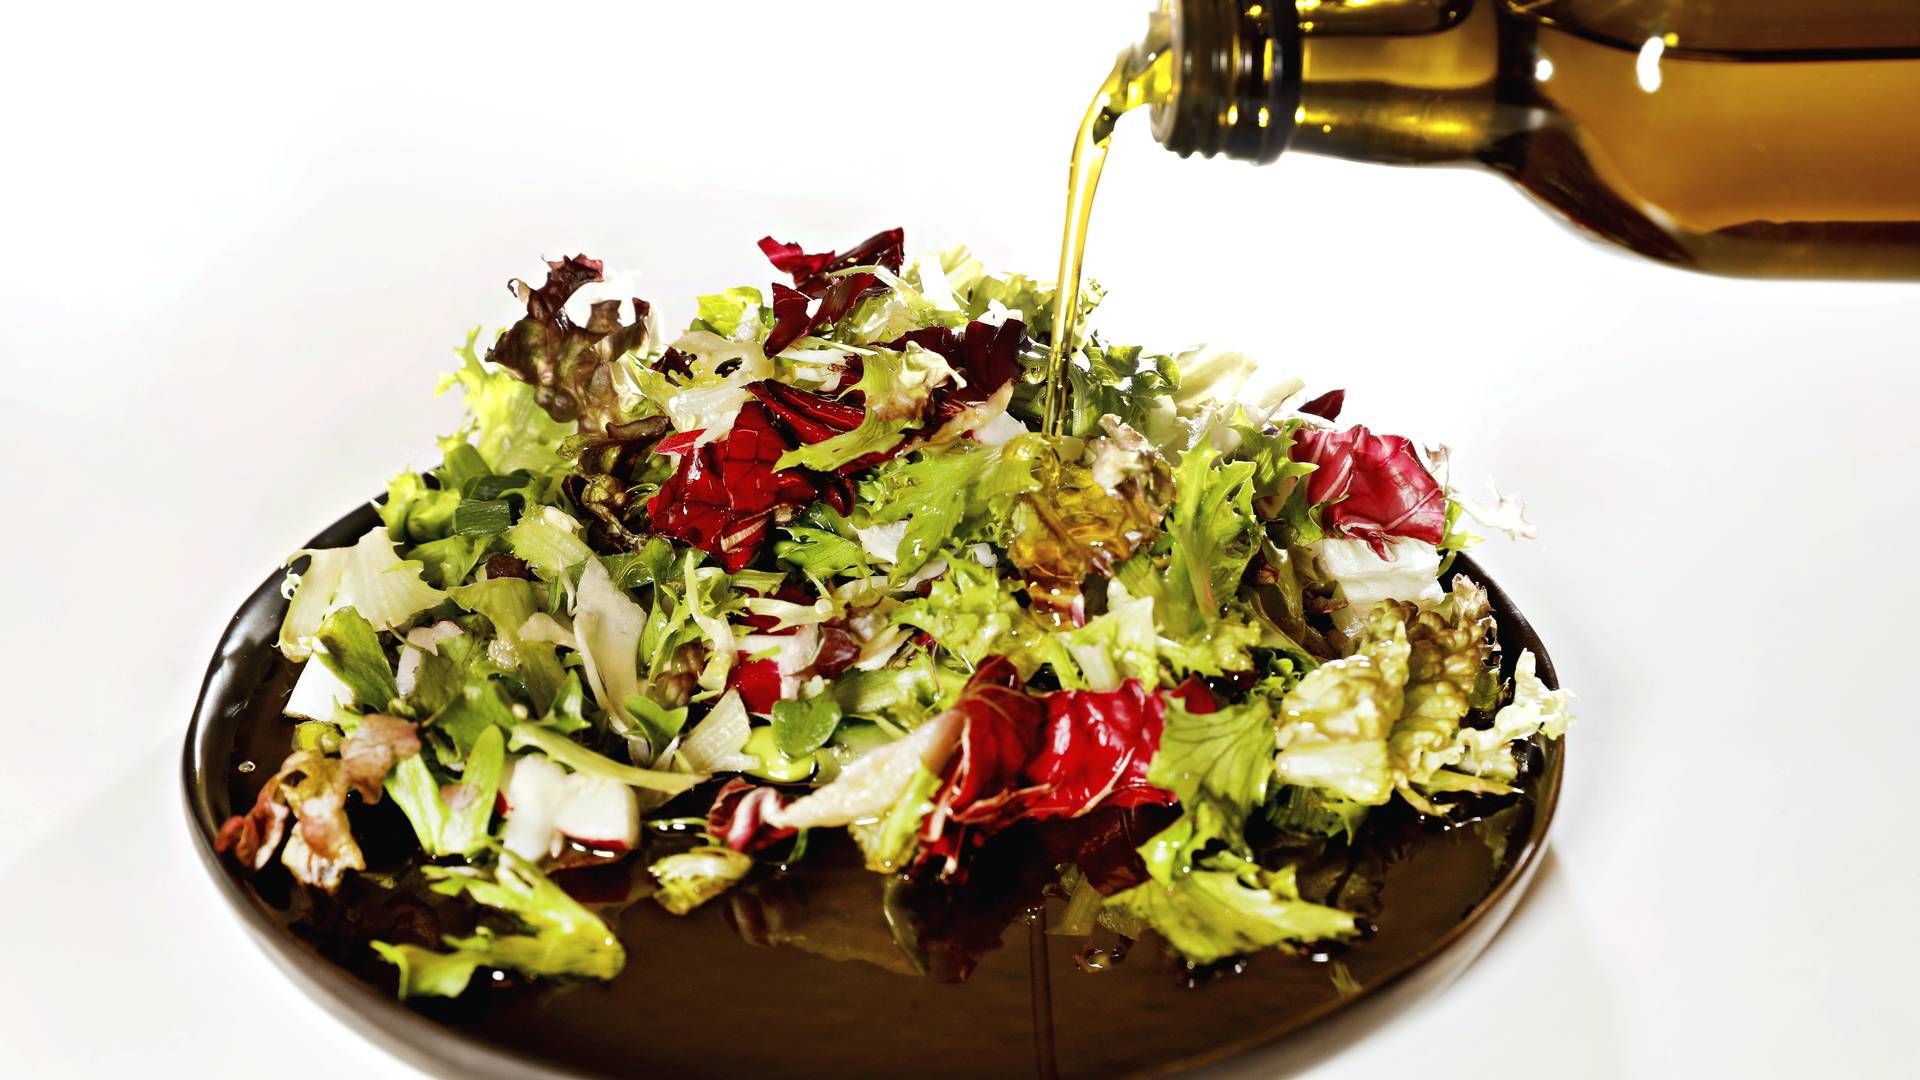 Det kan blive dyrere, hvis man vil supplere sin salat med olievenolie efter et år med tørke og dårlig høst. | Foto: Jacob Ehrbahn